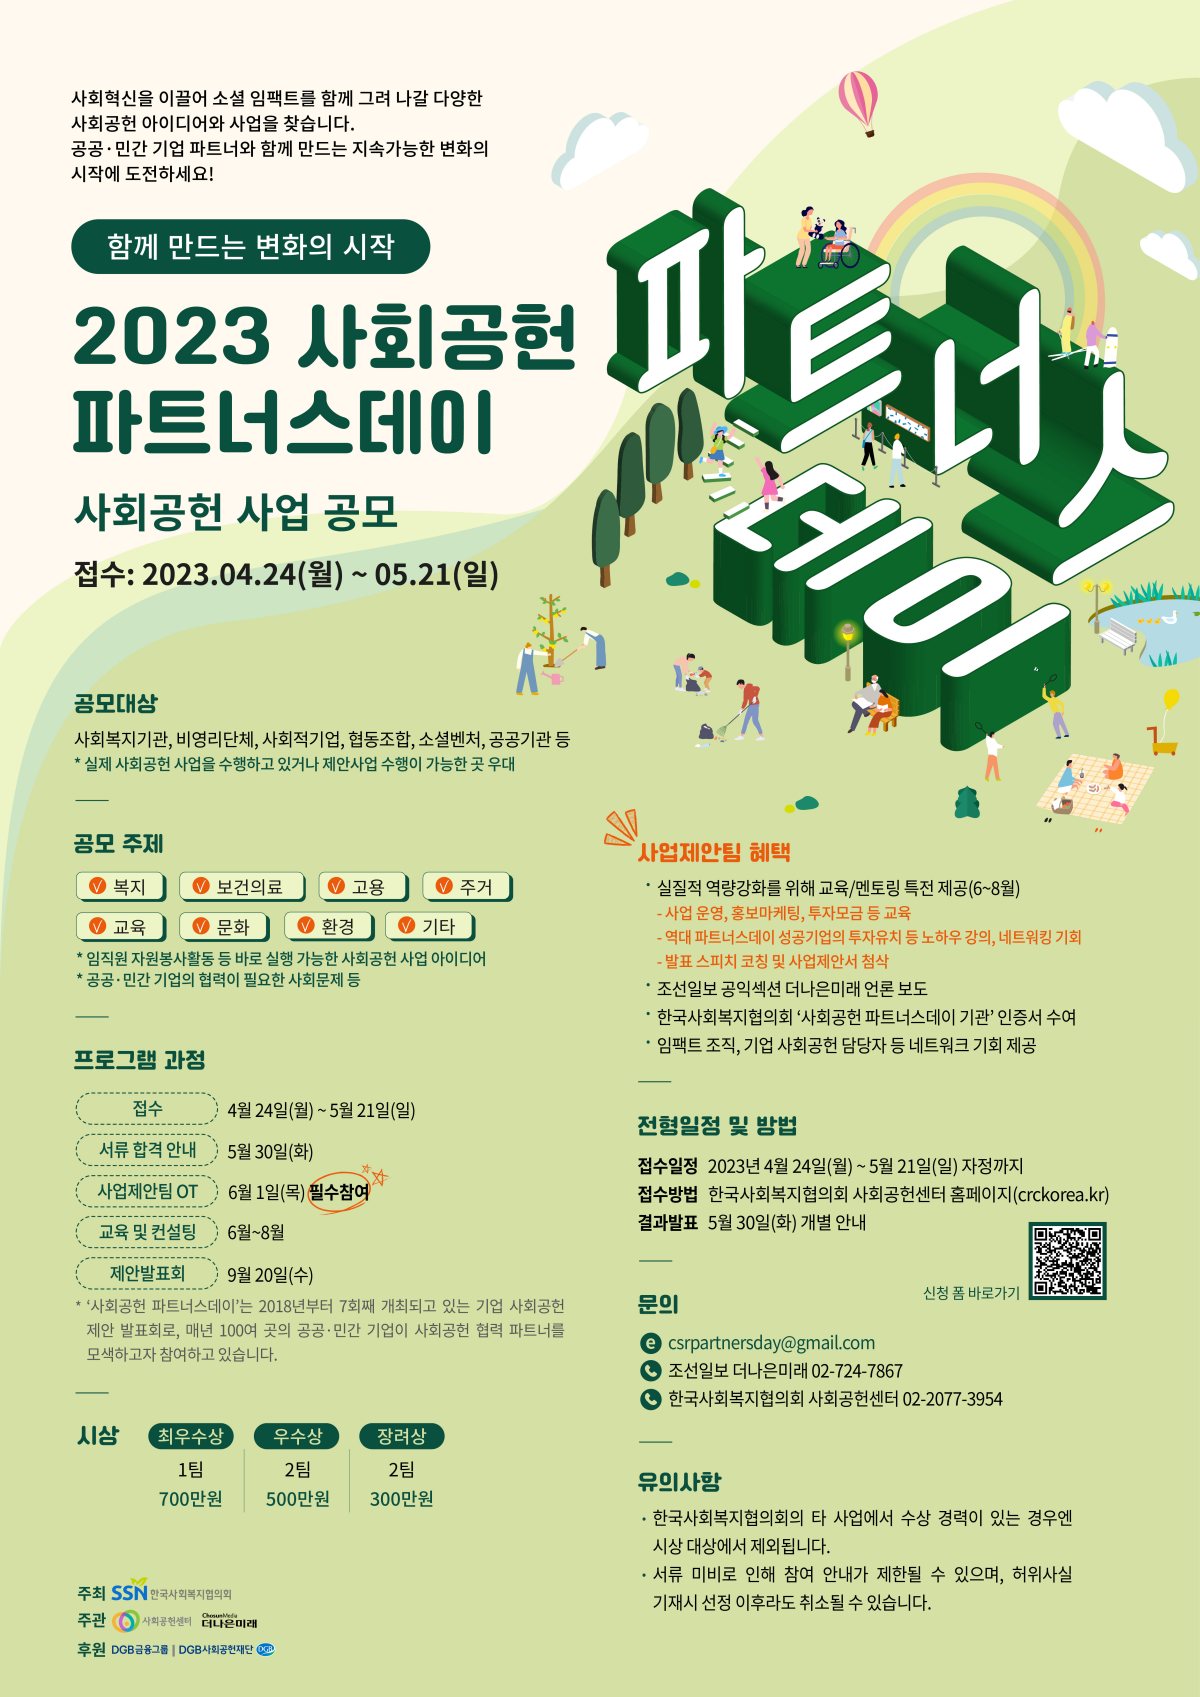 [알립니다] '2023 사회공헌 파트너스데이' 사업 공모